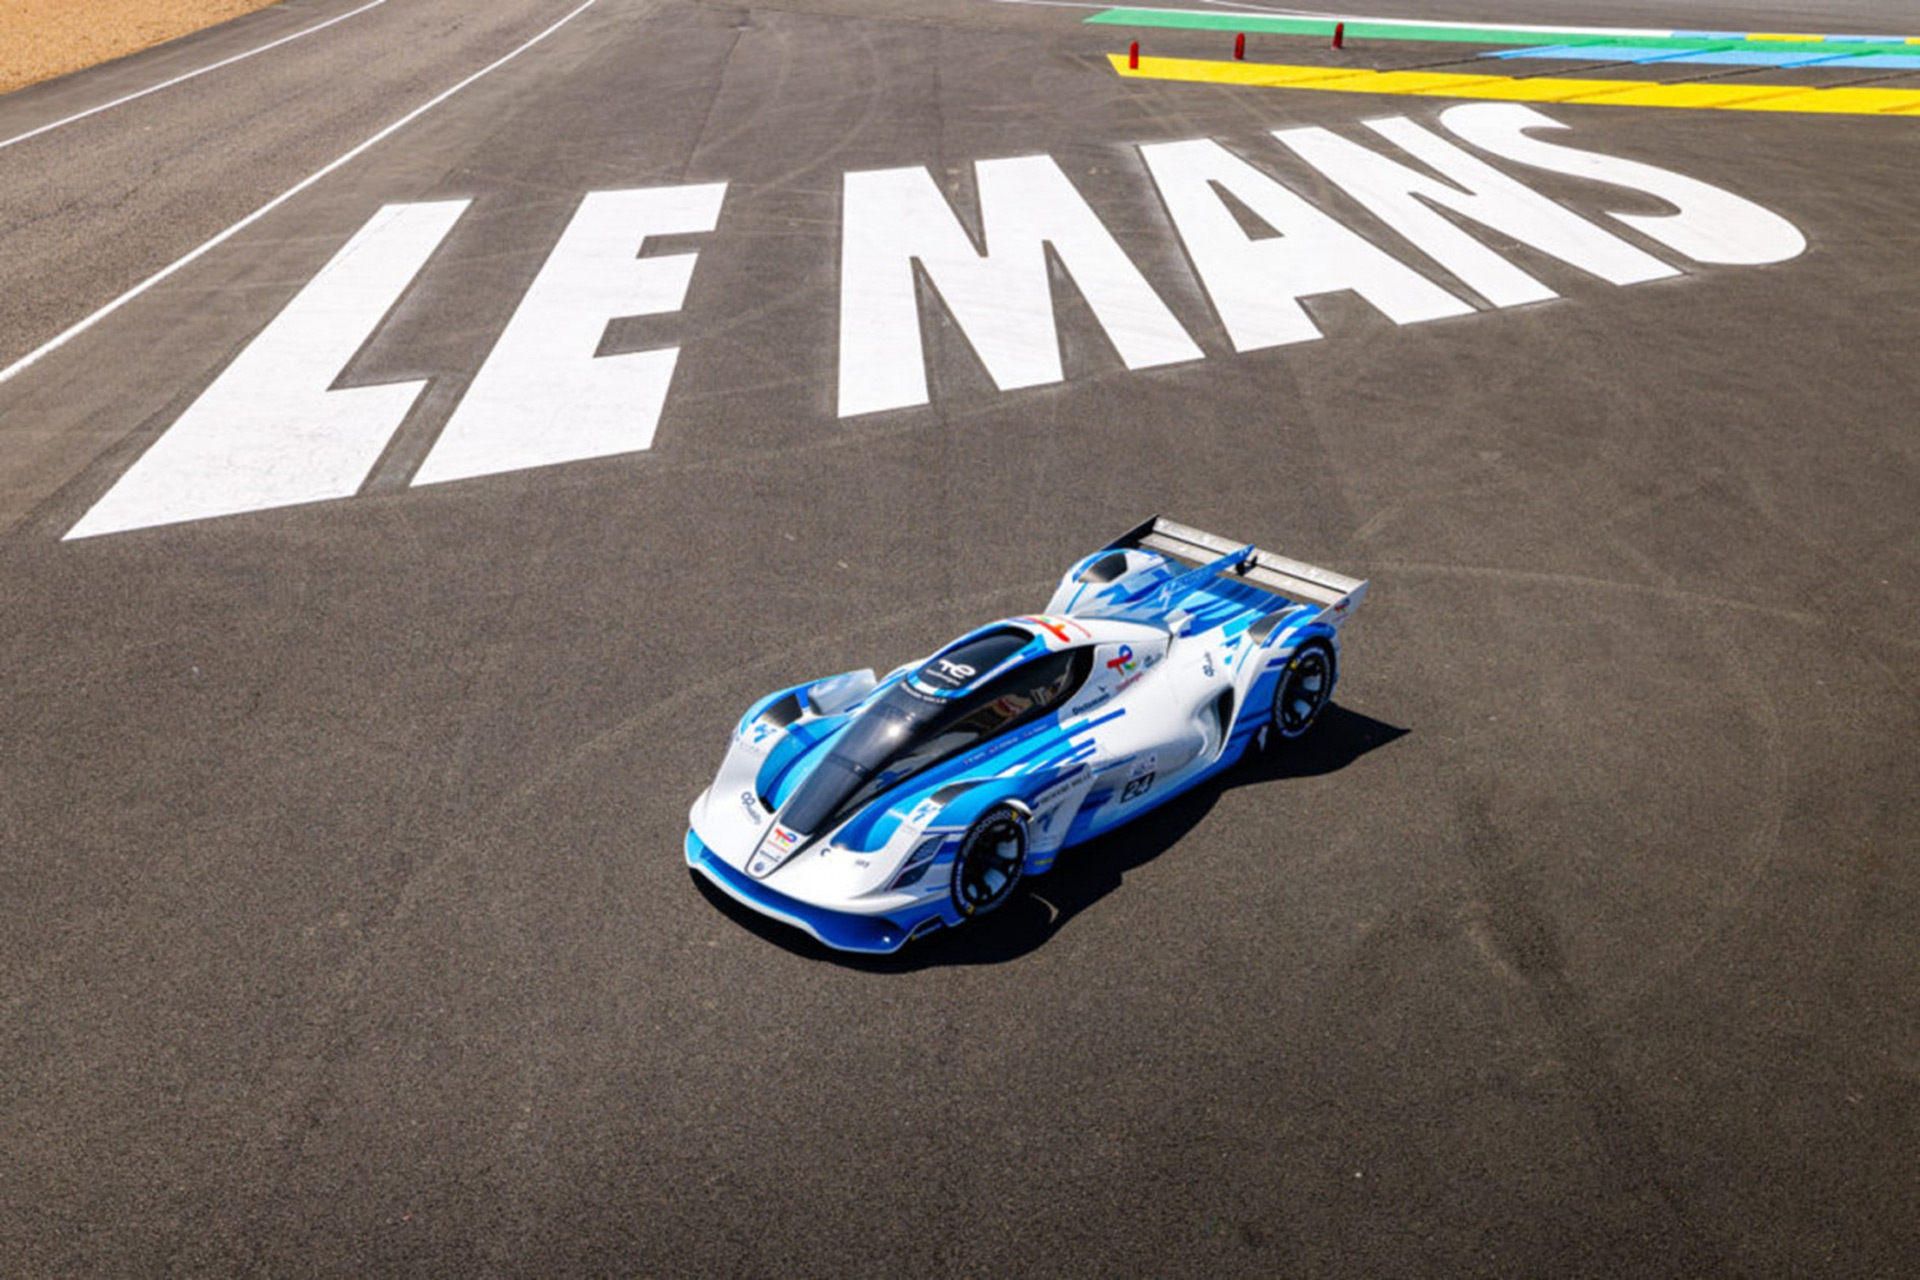 MissionH24 Evo hydrogen race car concept debuts at Le Mans [Video]